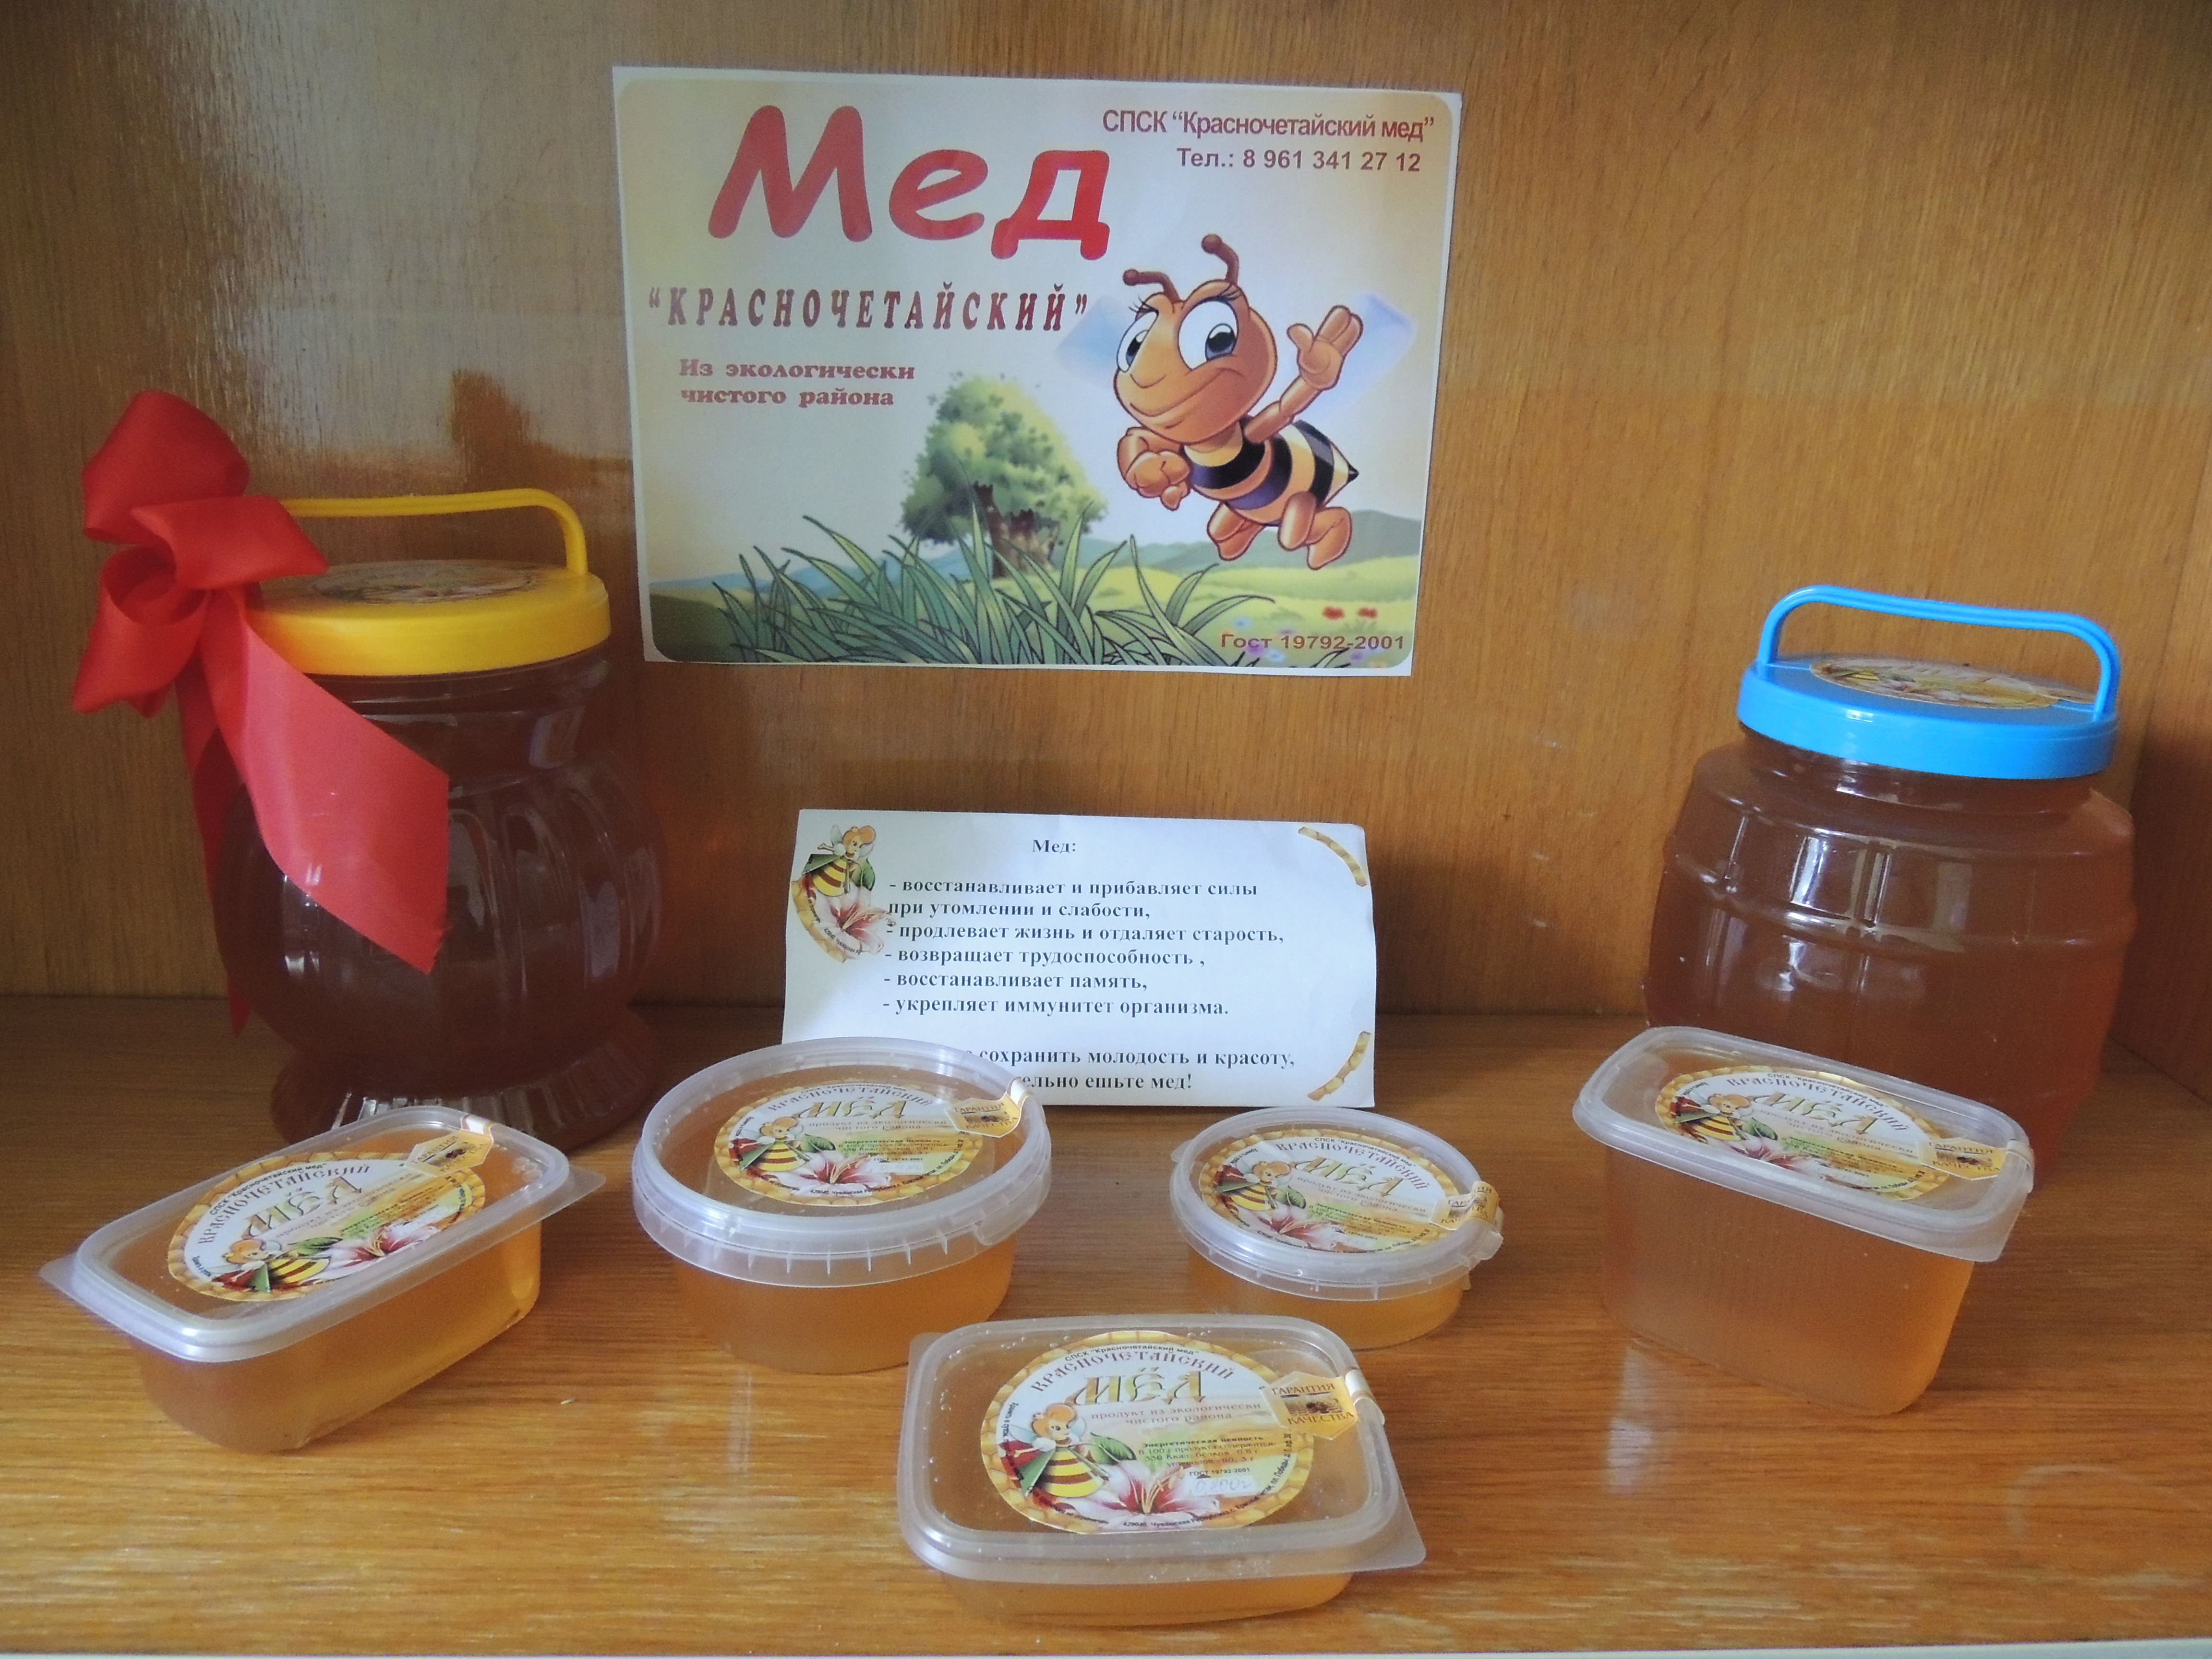 Выставка – дегустация Красночетайского меда